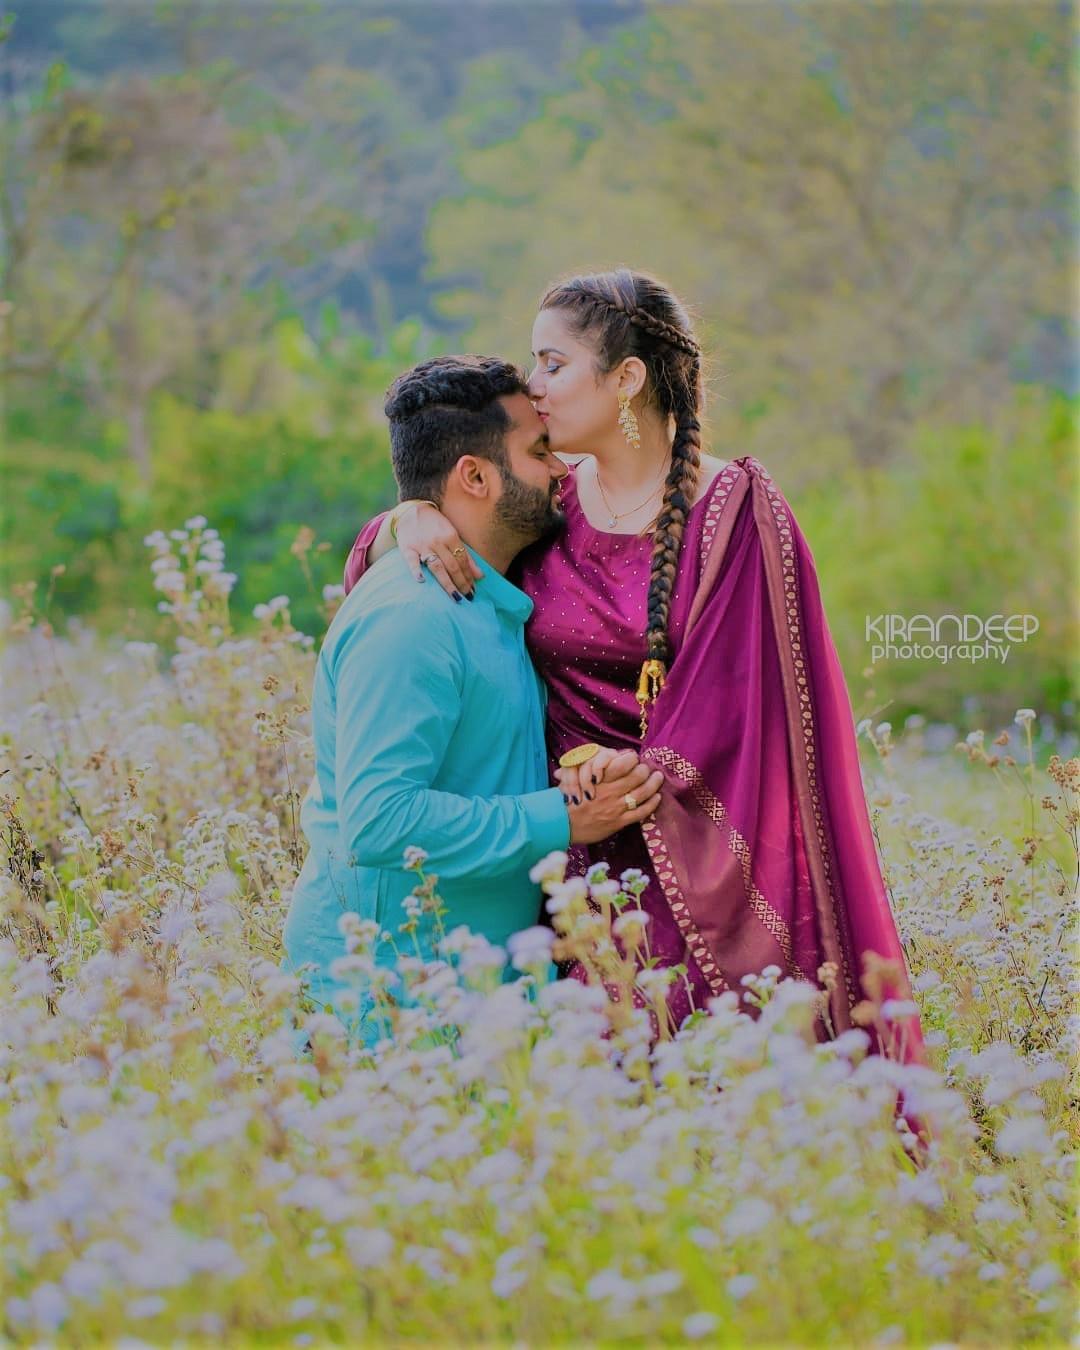 Punjabi Wedding Couple Photoshoot Poses